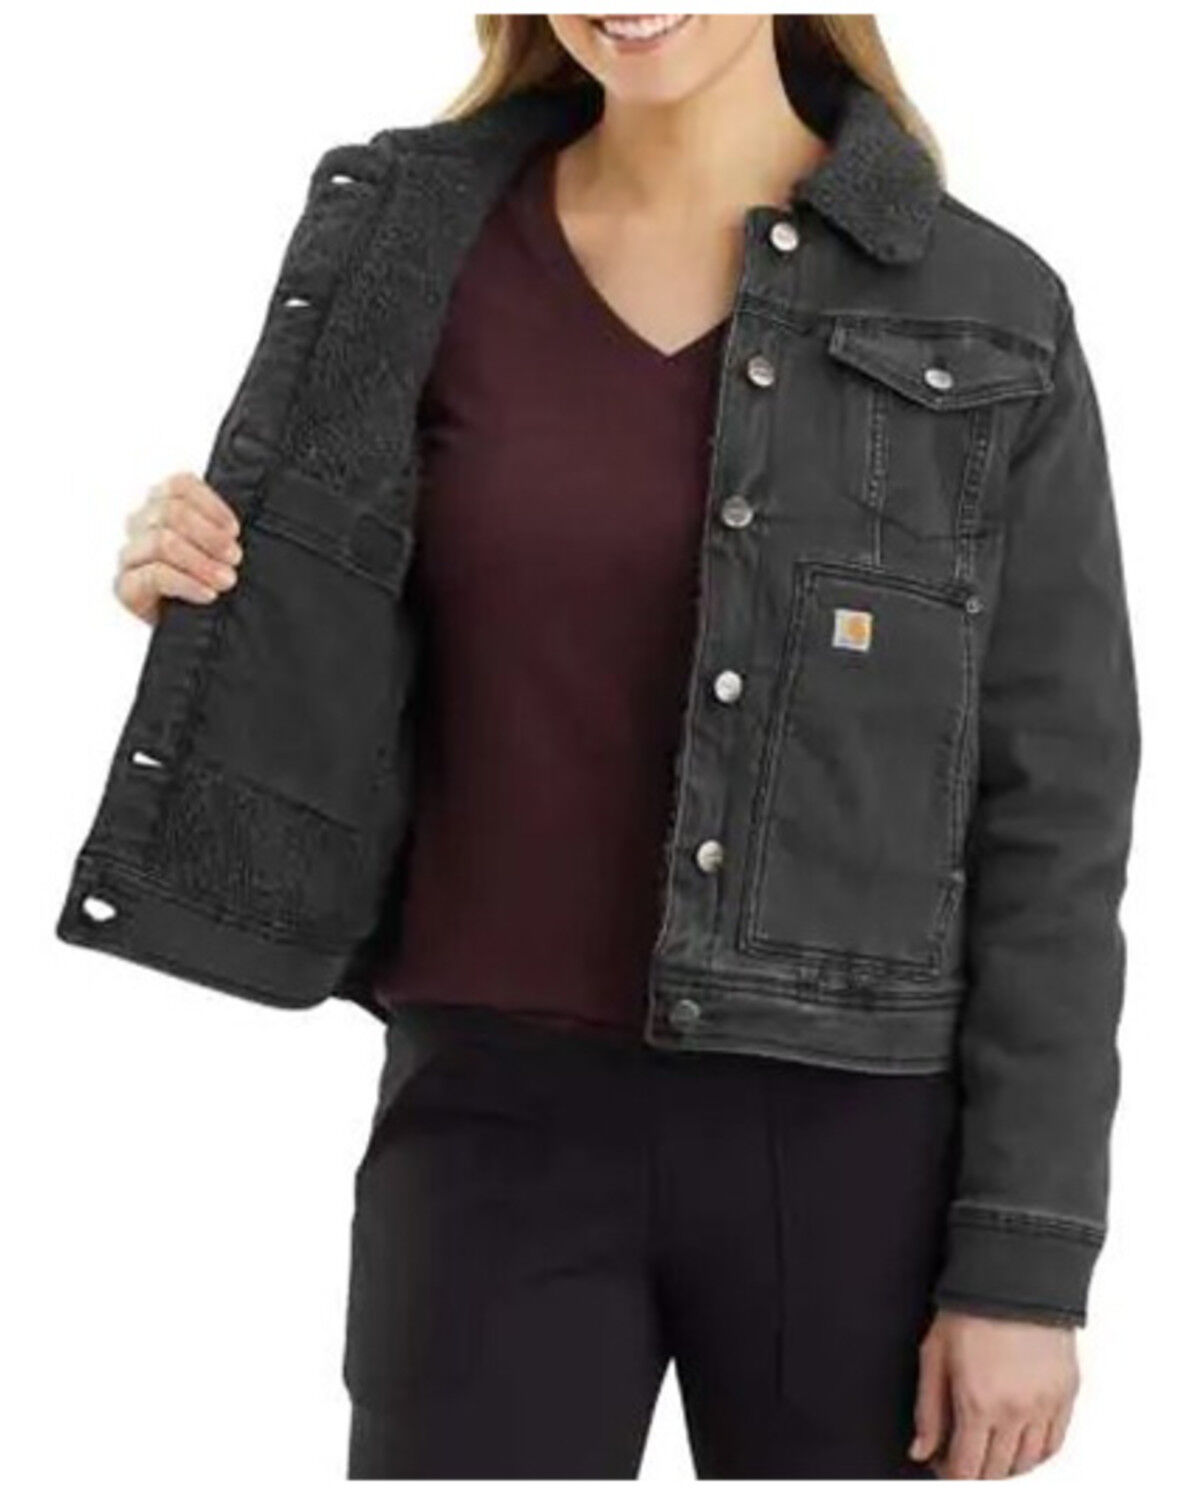 carhartt jean jacket sherpa lined